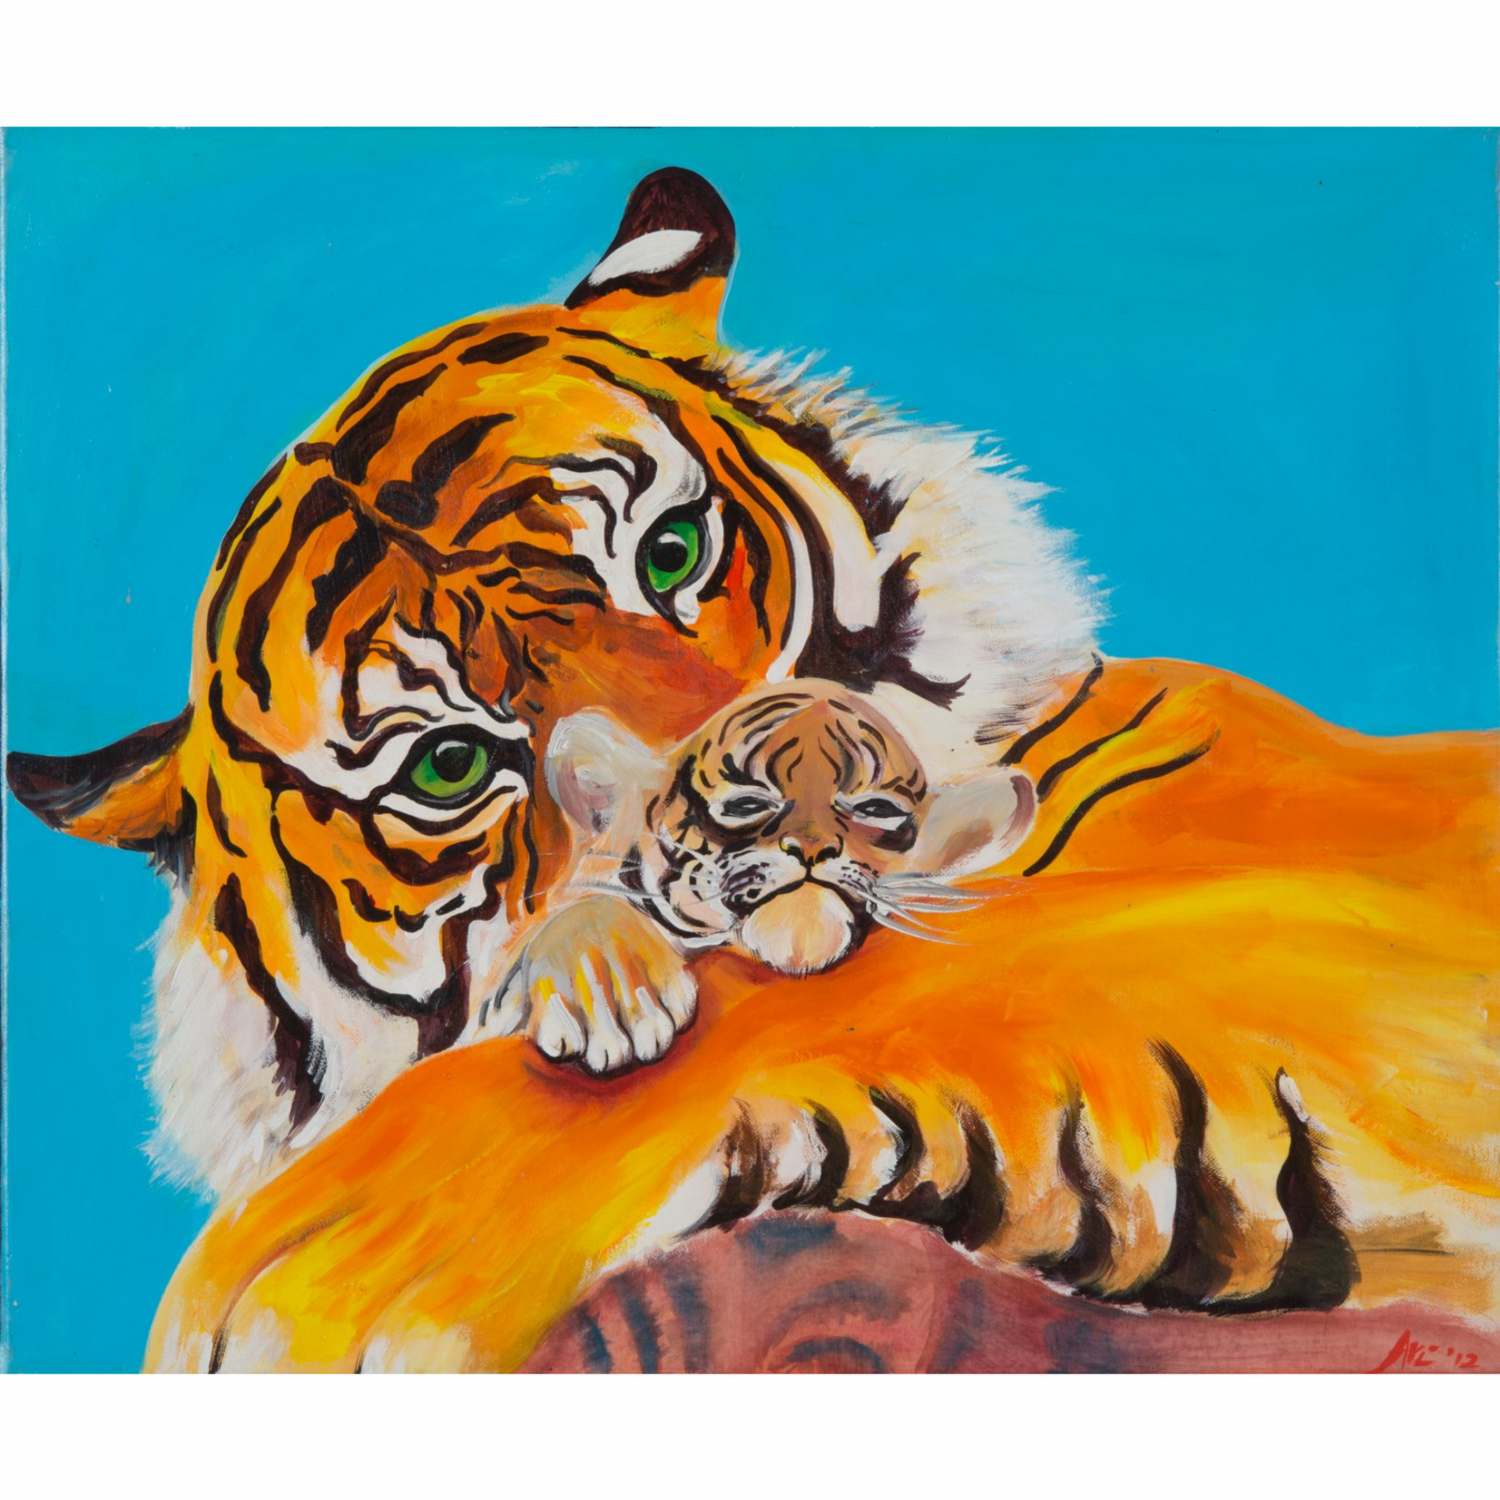 Tiger and tiger cub